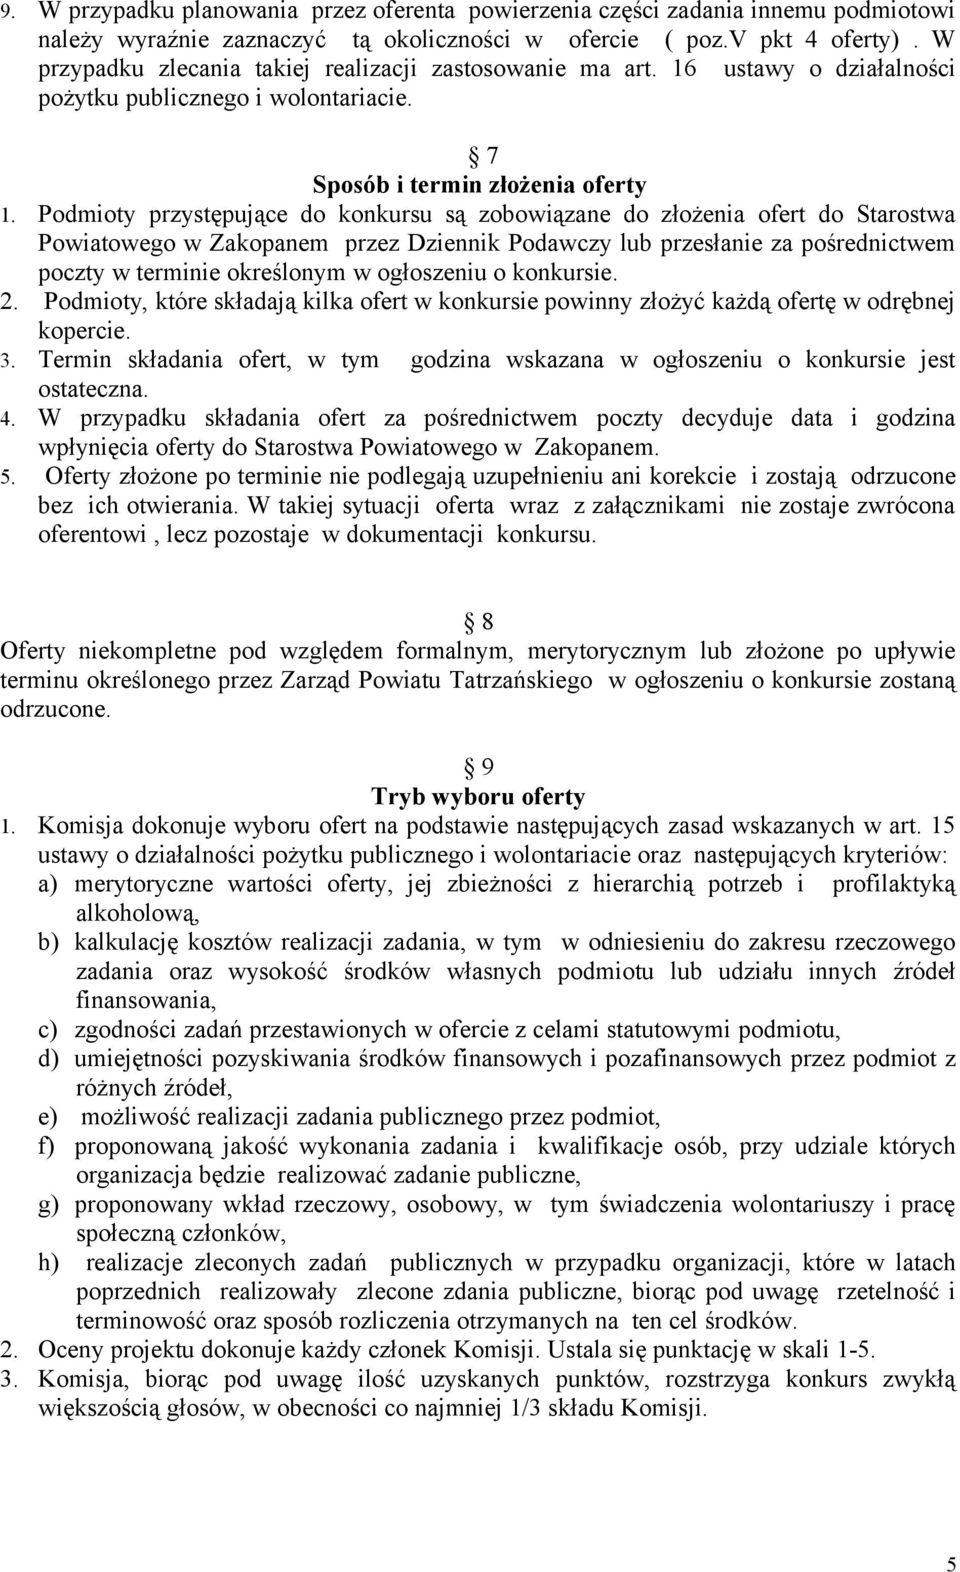 Podmioty przystępujące do konkursu są zobowiązane do złożenia ofert do Starostwa Powiatowego w Zakopanem przez Dziennik Podawczy lub przesłanie za pośrednictwem poczty w terminie określonym w